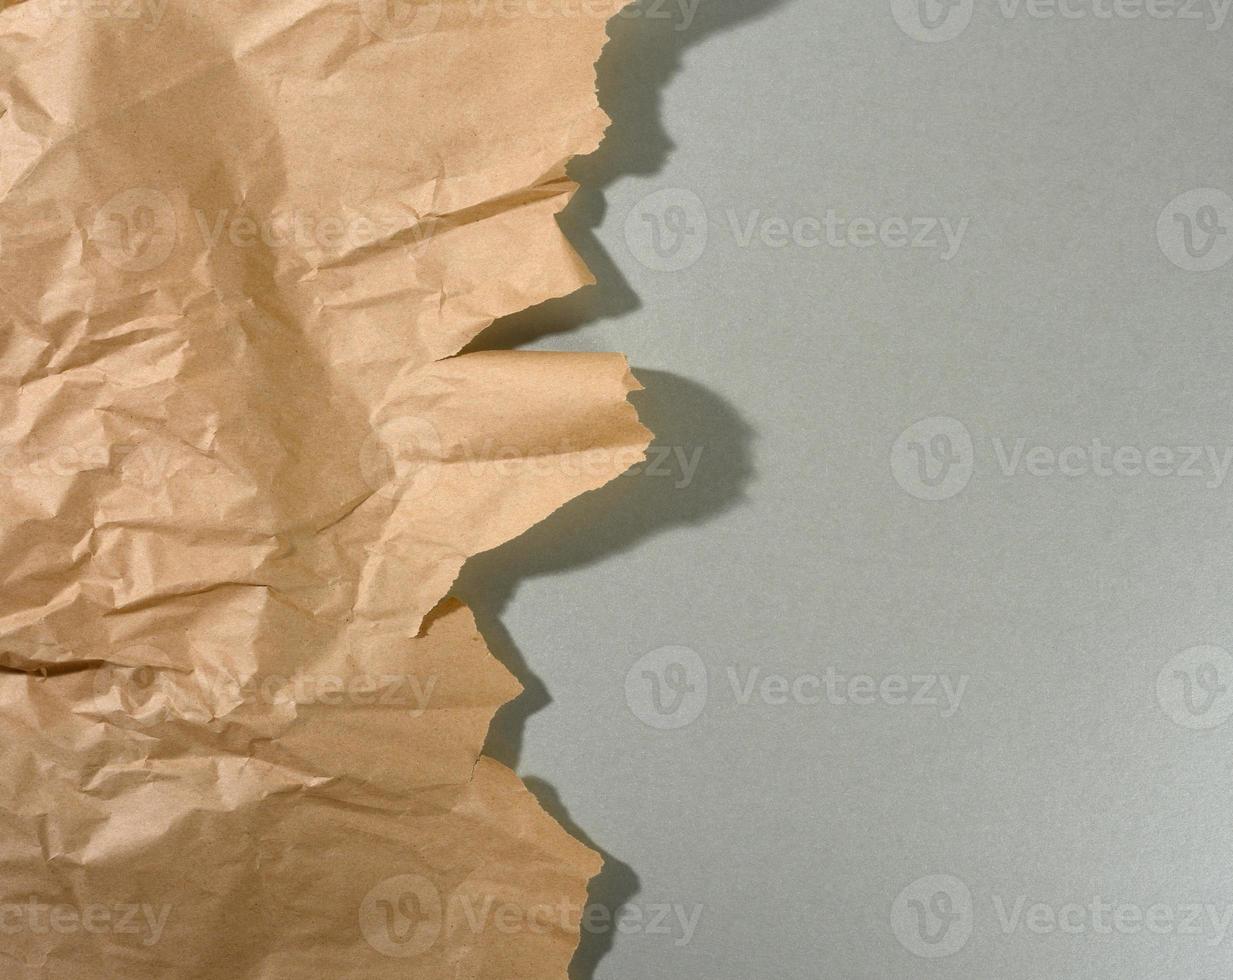 trozo de papel marrón menta con bordes rasgados y sombra sobre fondo gris. telón de fondo creativo abstracto para el diseñador foto